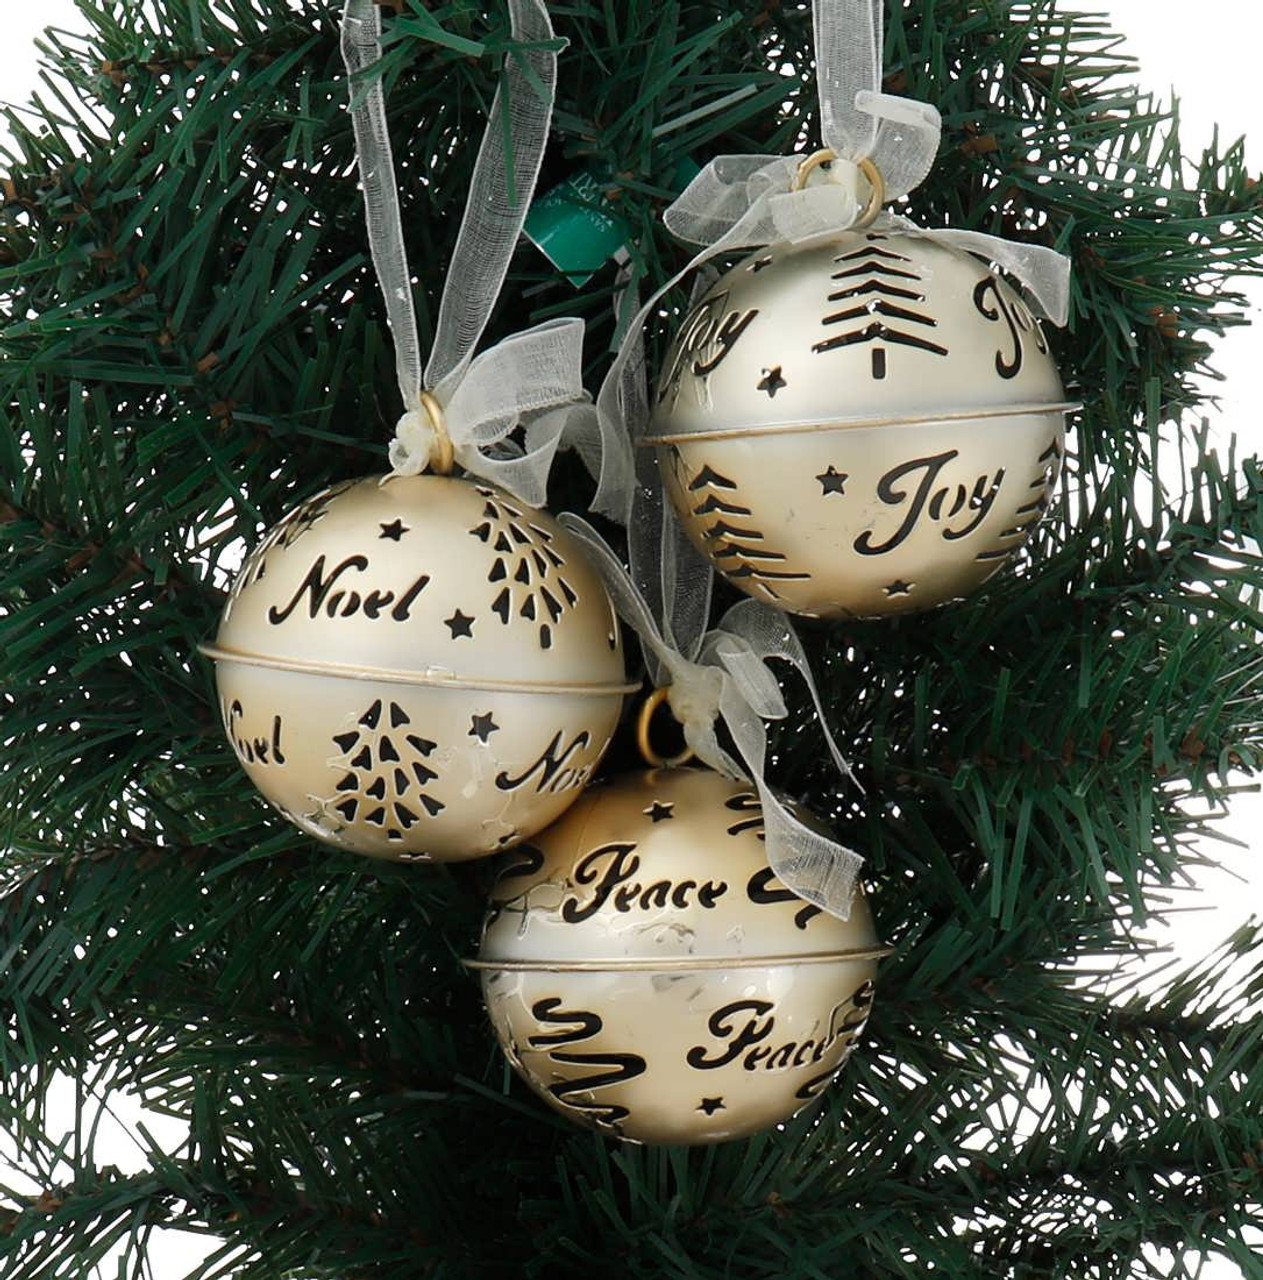 2PCS Xmas Bell Ornaments Large Jingle Bell Ornament Bells Wreath Ornaments